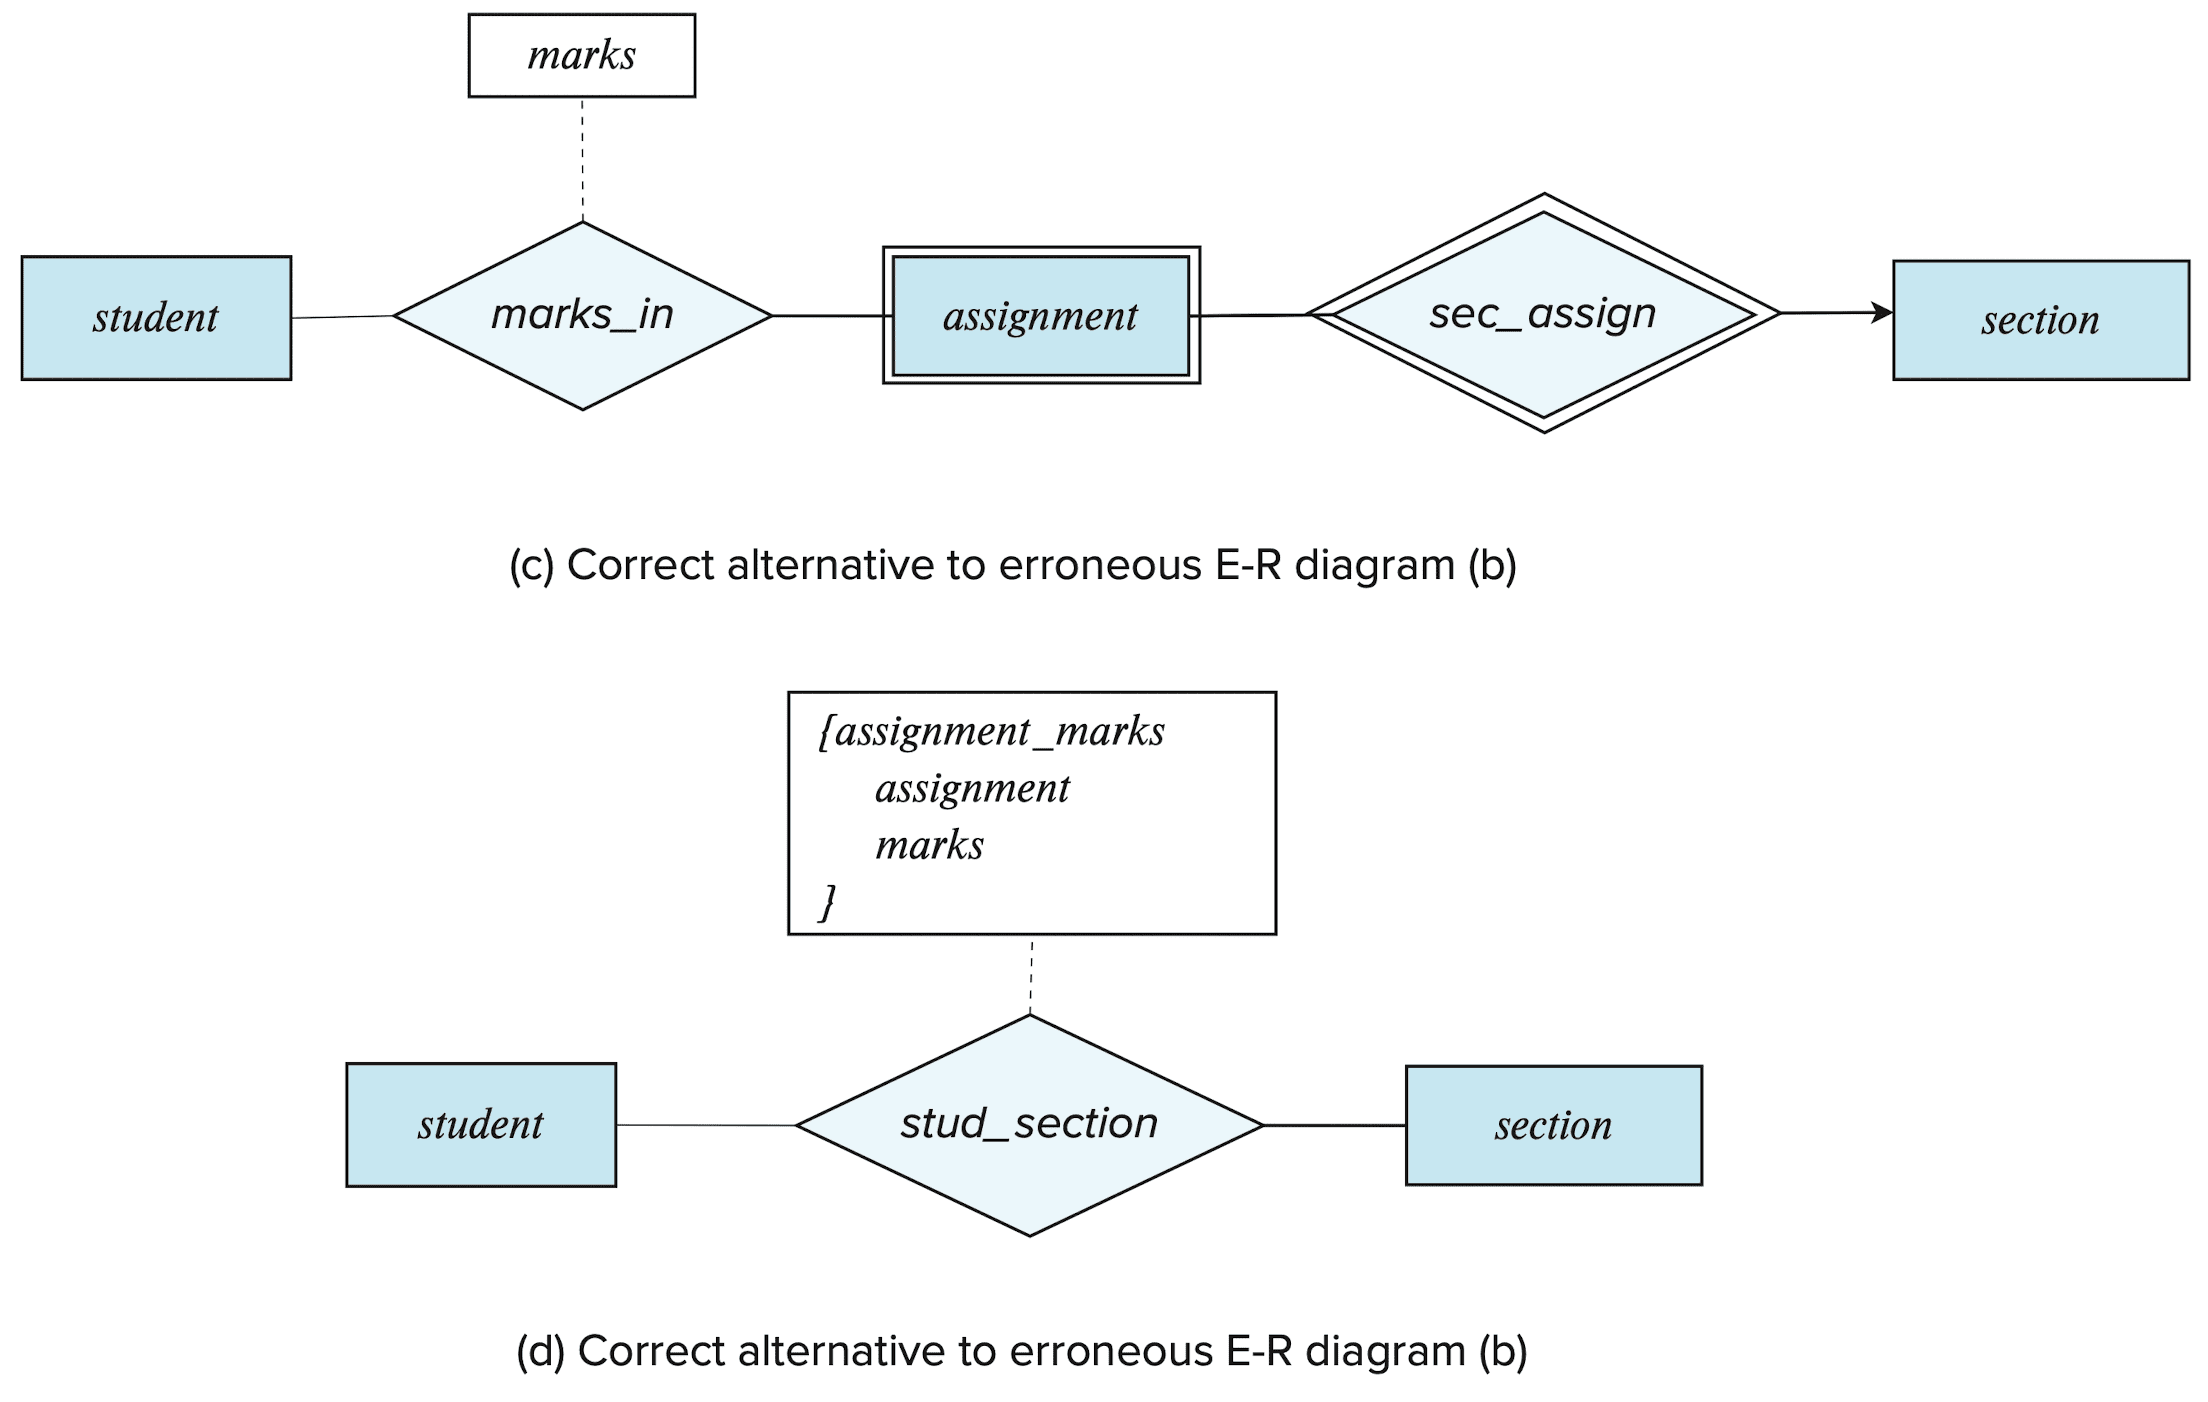 Correct versions of the E-R diagram